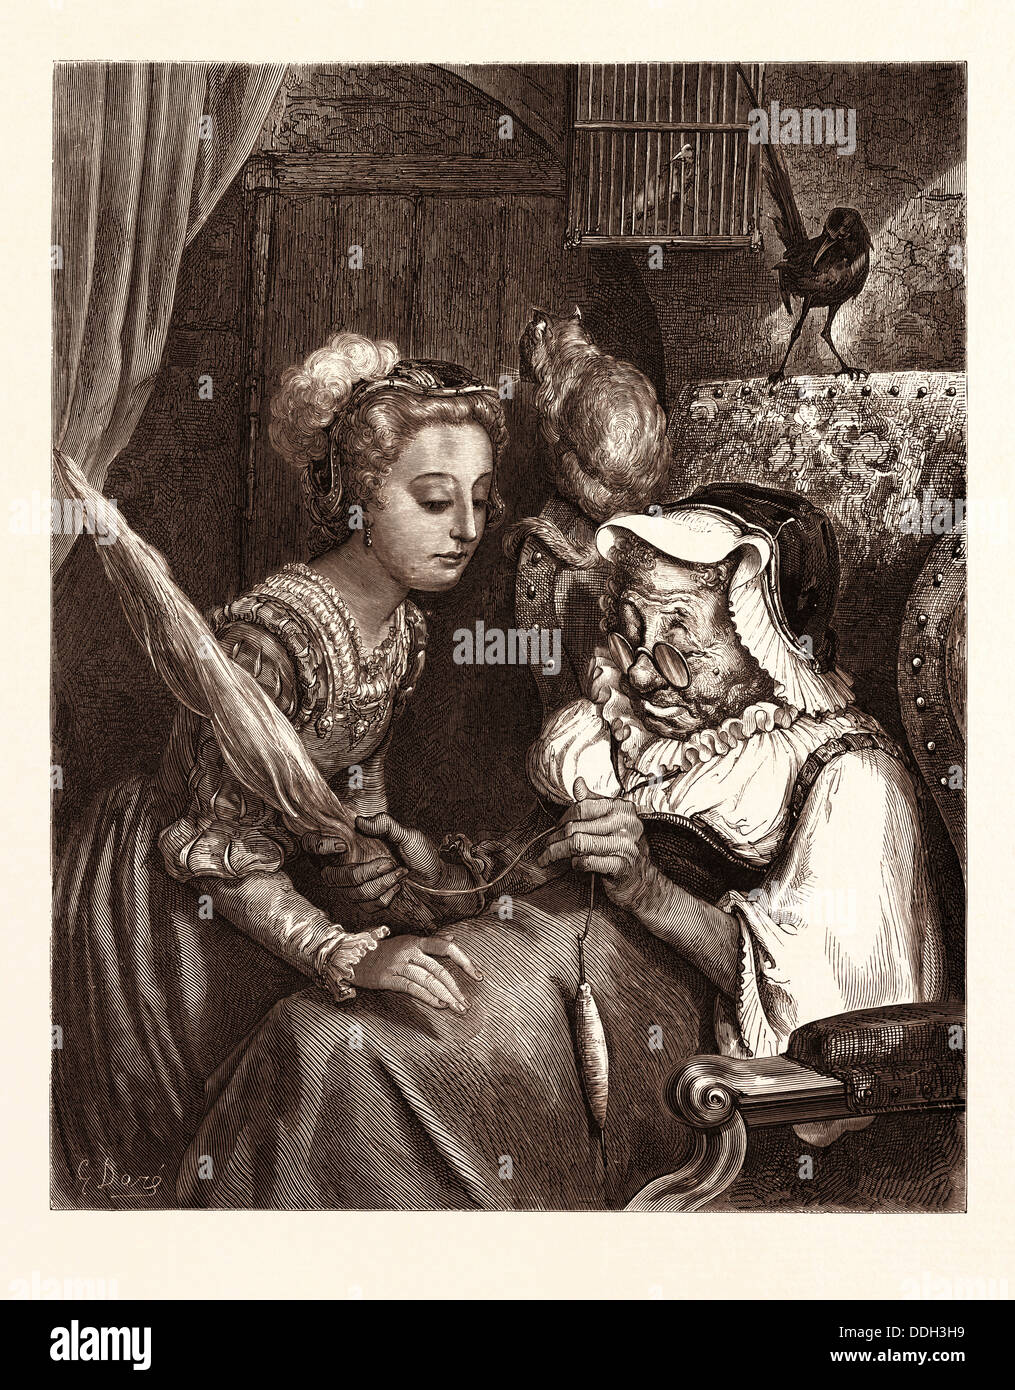 La principessa e la Fata nonostante, dal mondo fiabesco dalla cappa giovani; da Gustave Doré: Dore, 1832 - 1883, francese. 1870, arte Foto Stock